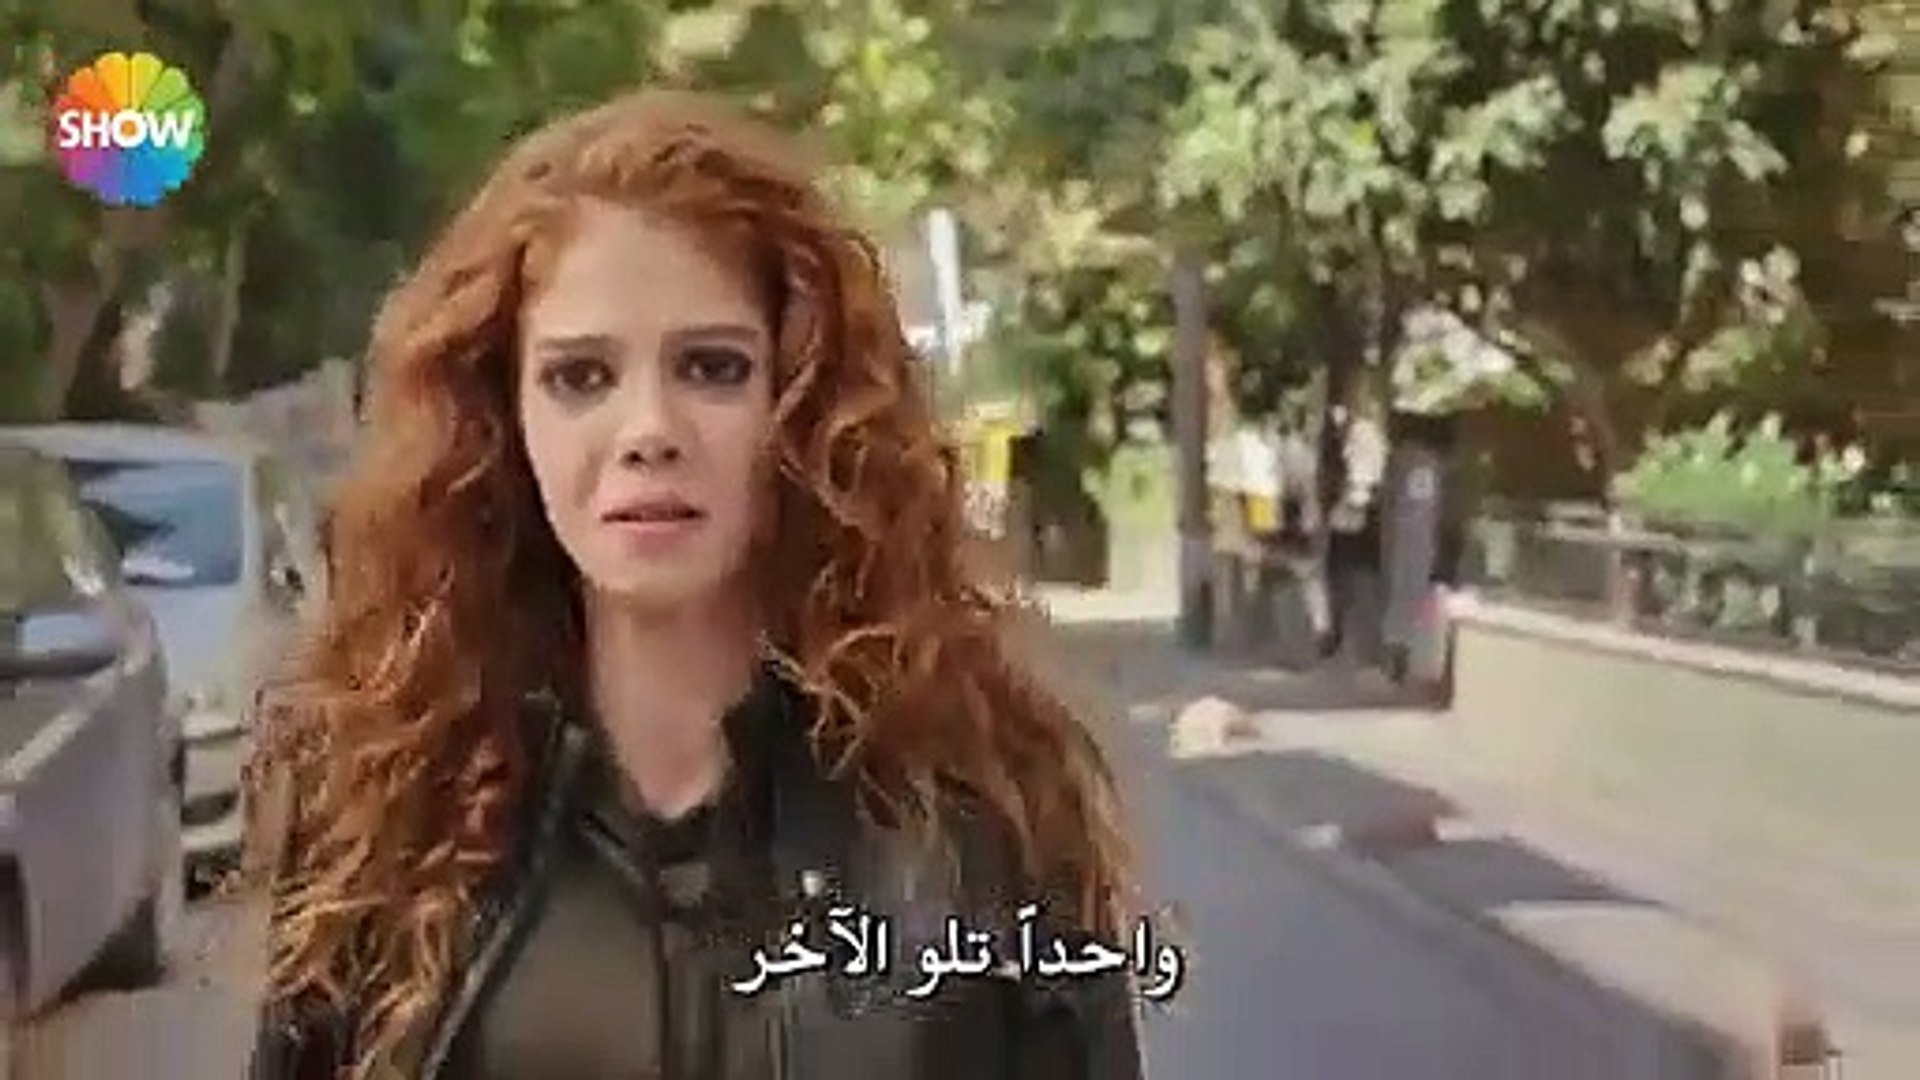 مسلسل اصدقاء جيدون الحلقة 7 القسم (3) مترجم للعربية - video Dailymotion